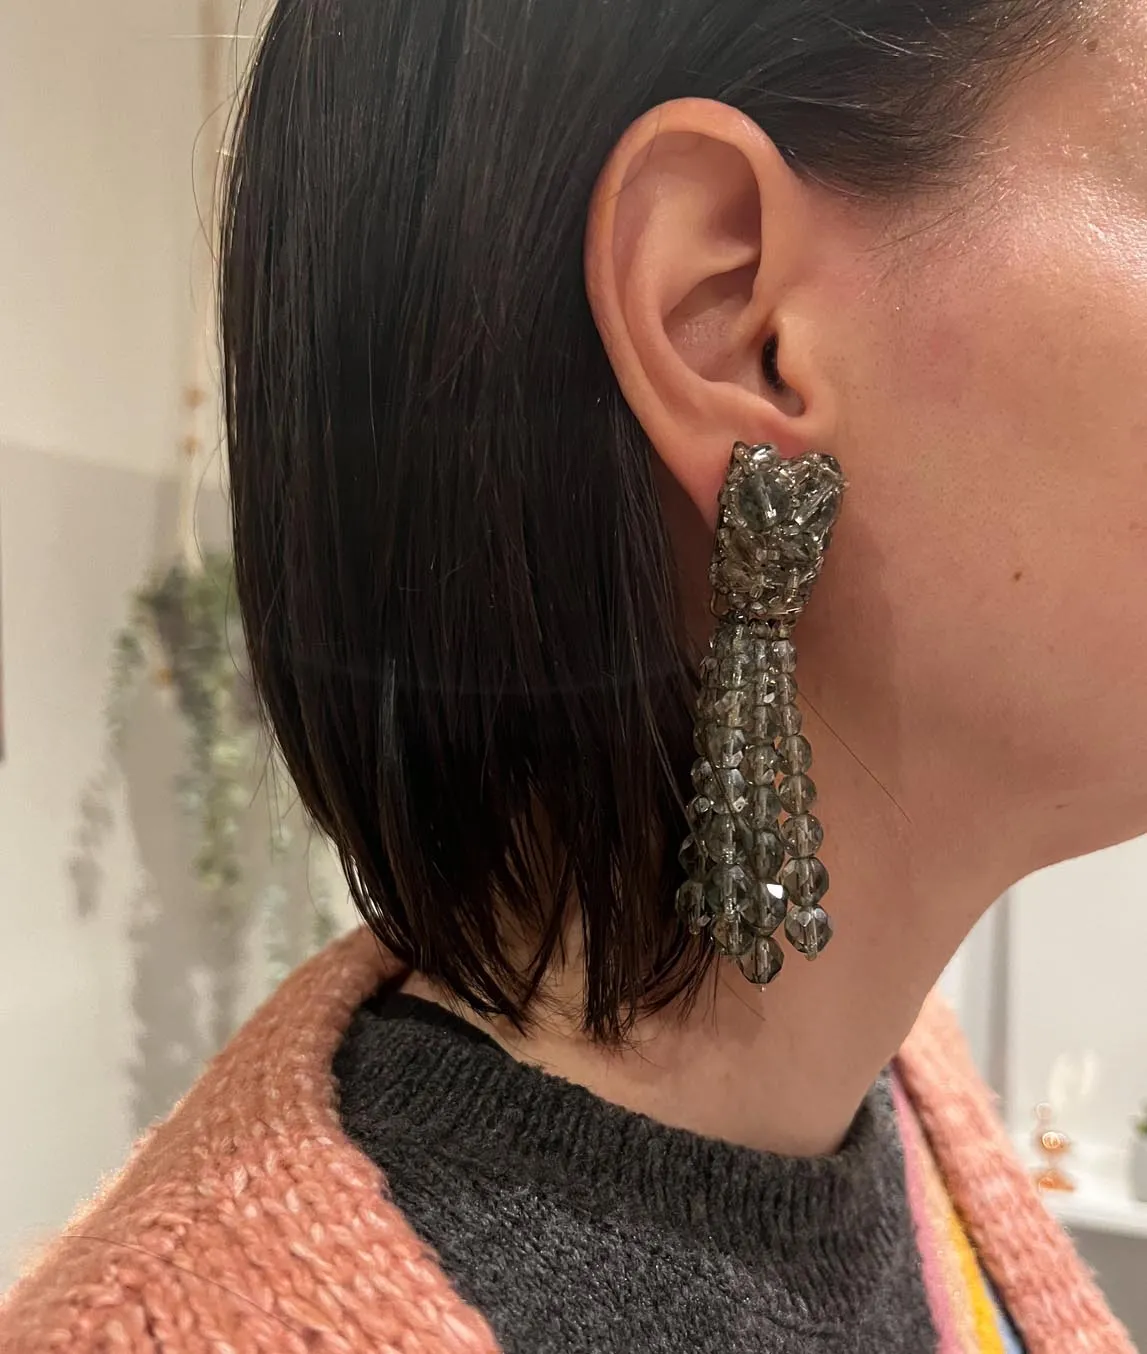 Long grey beaded earring by Coppola e Toppo worn by model